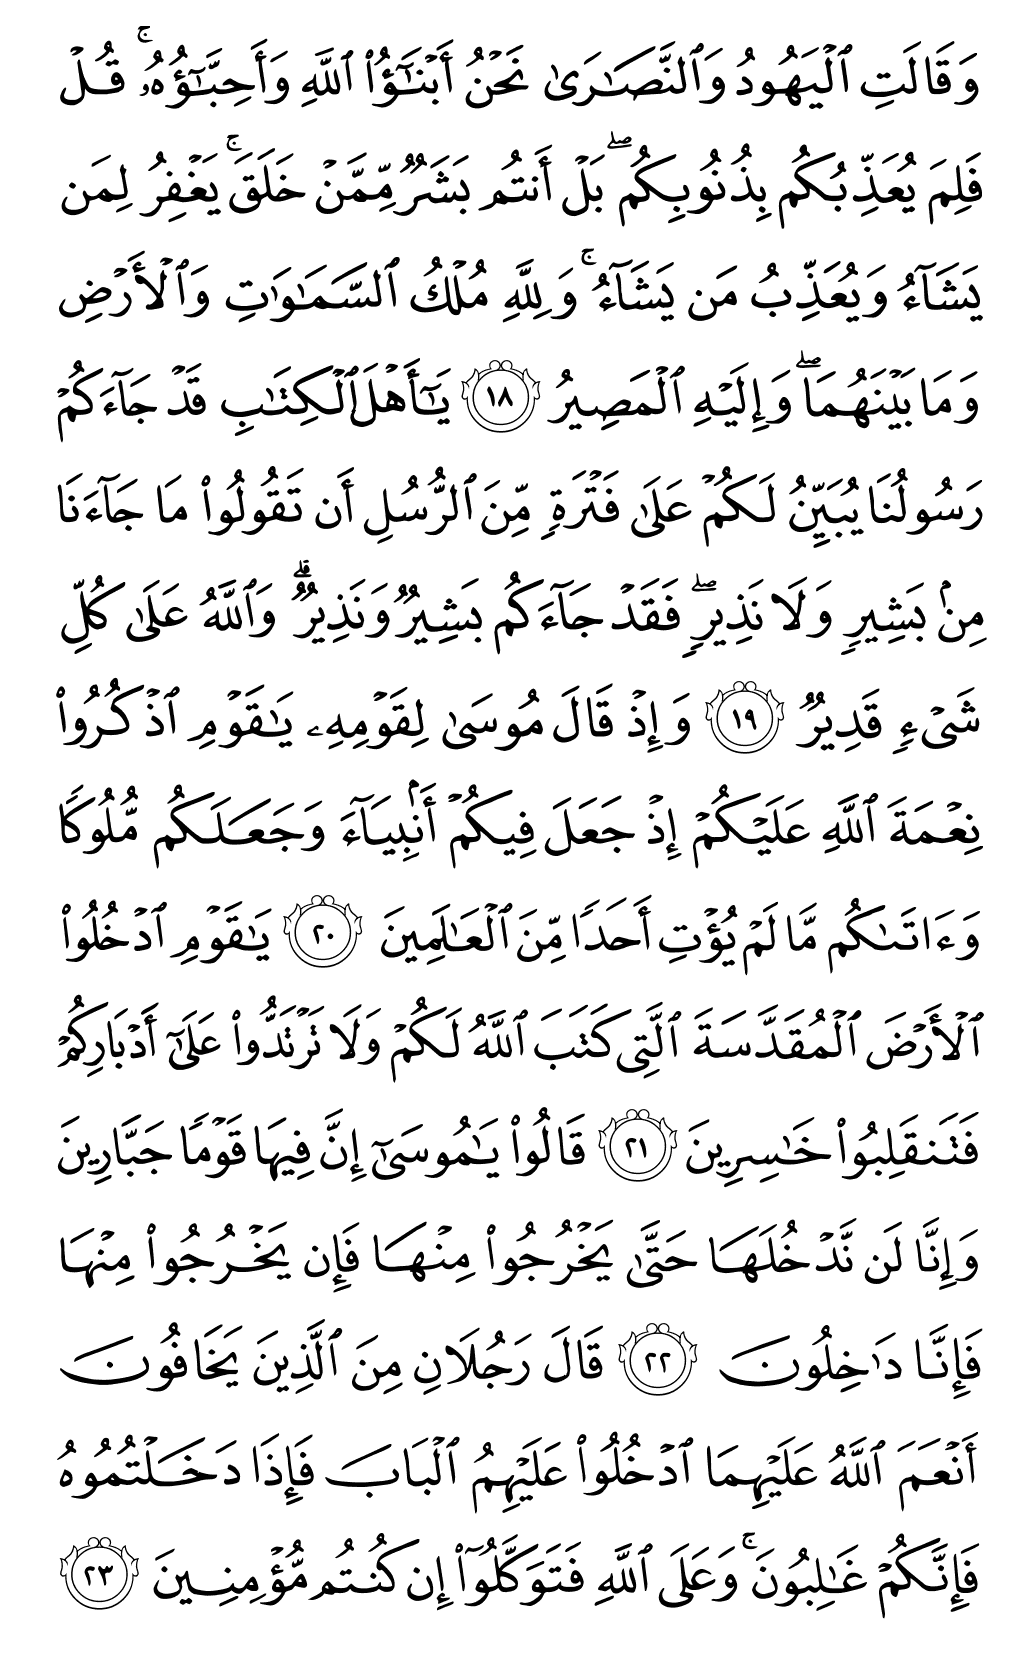 الصفحة رقم 111 من القرآن الكريم